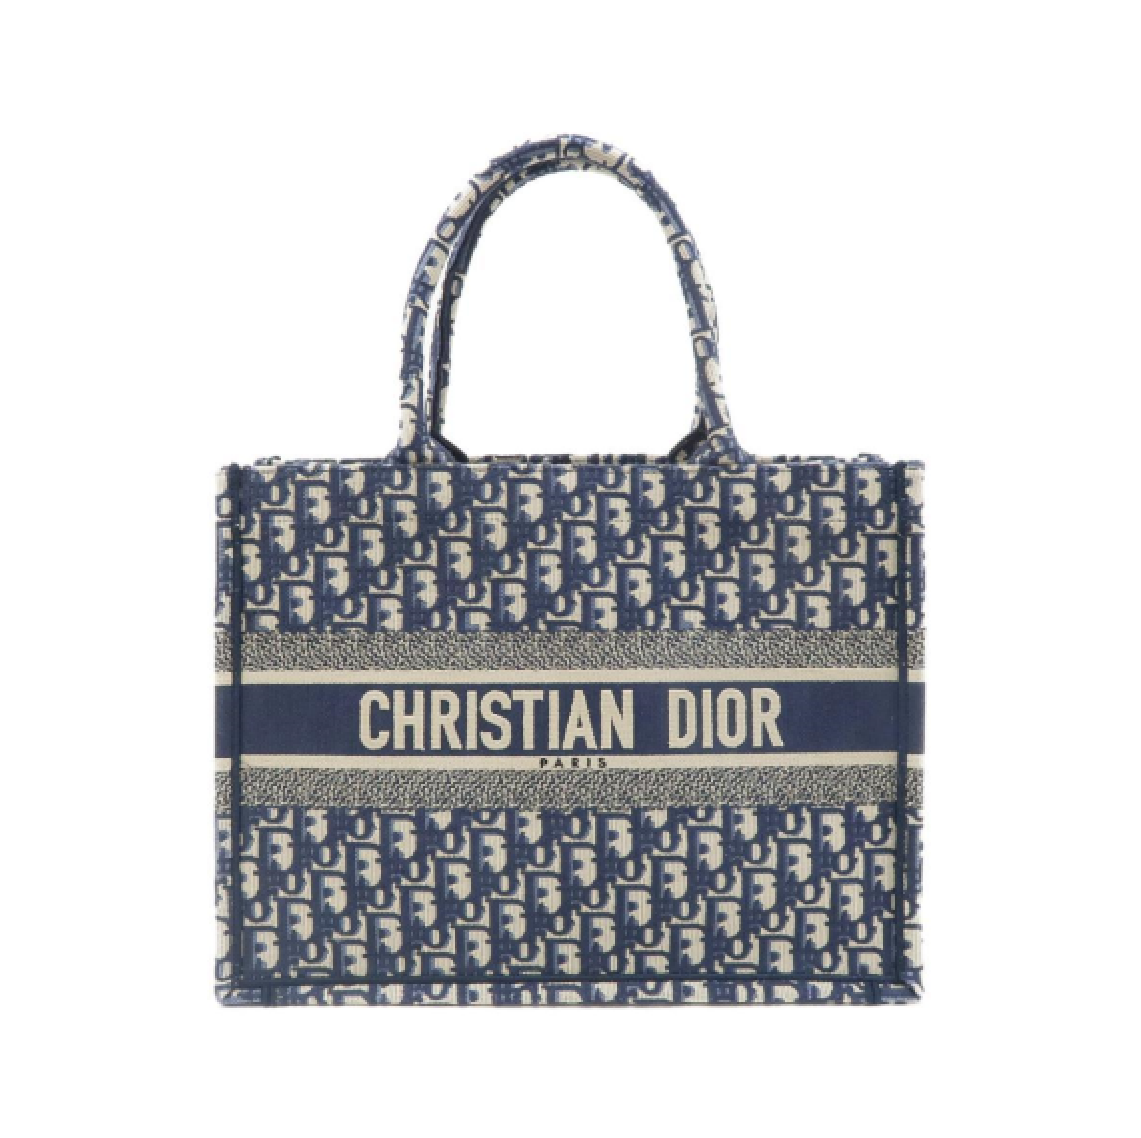 Dior ディオールのトートバッグです写真は実物でございます